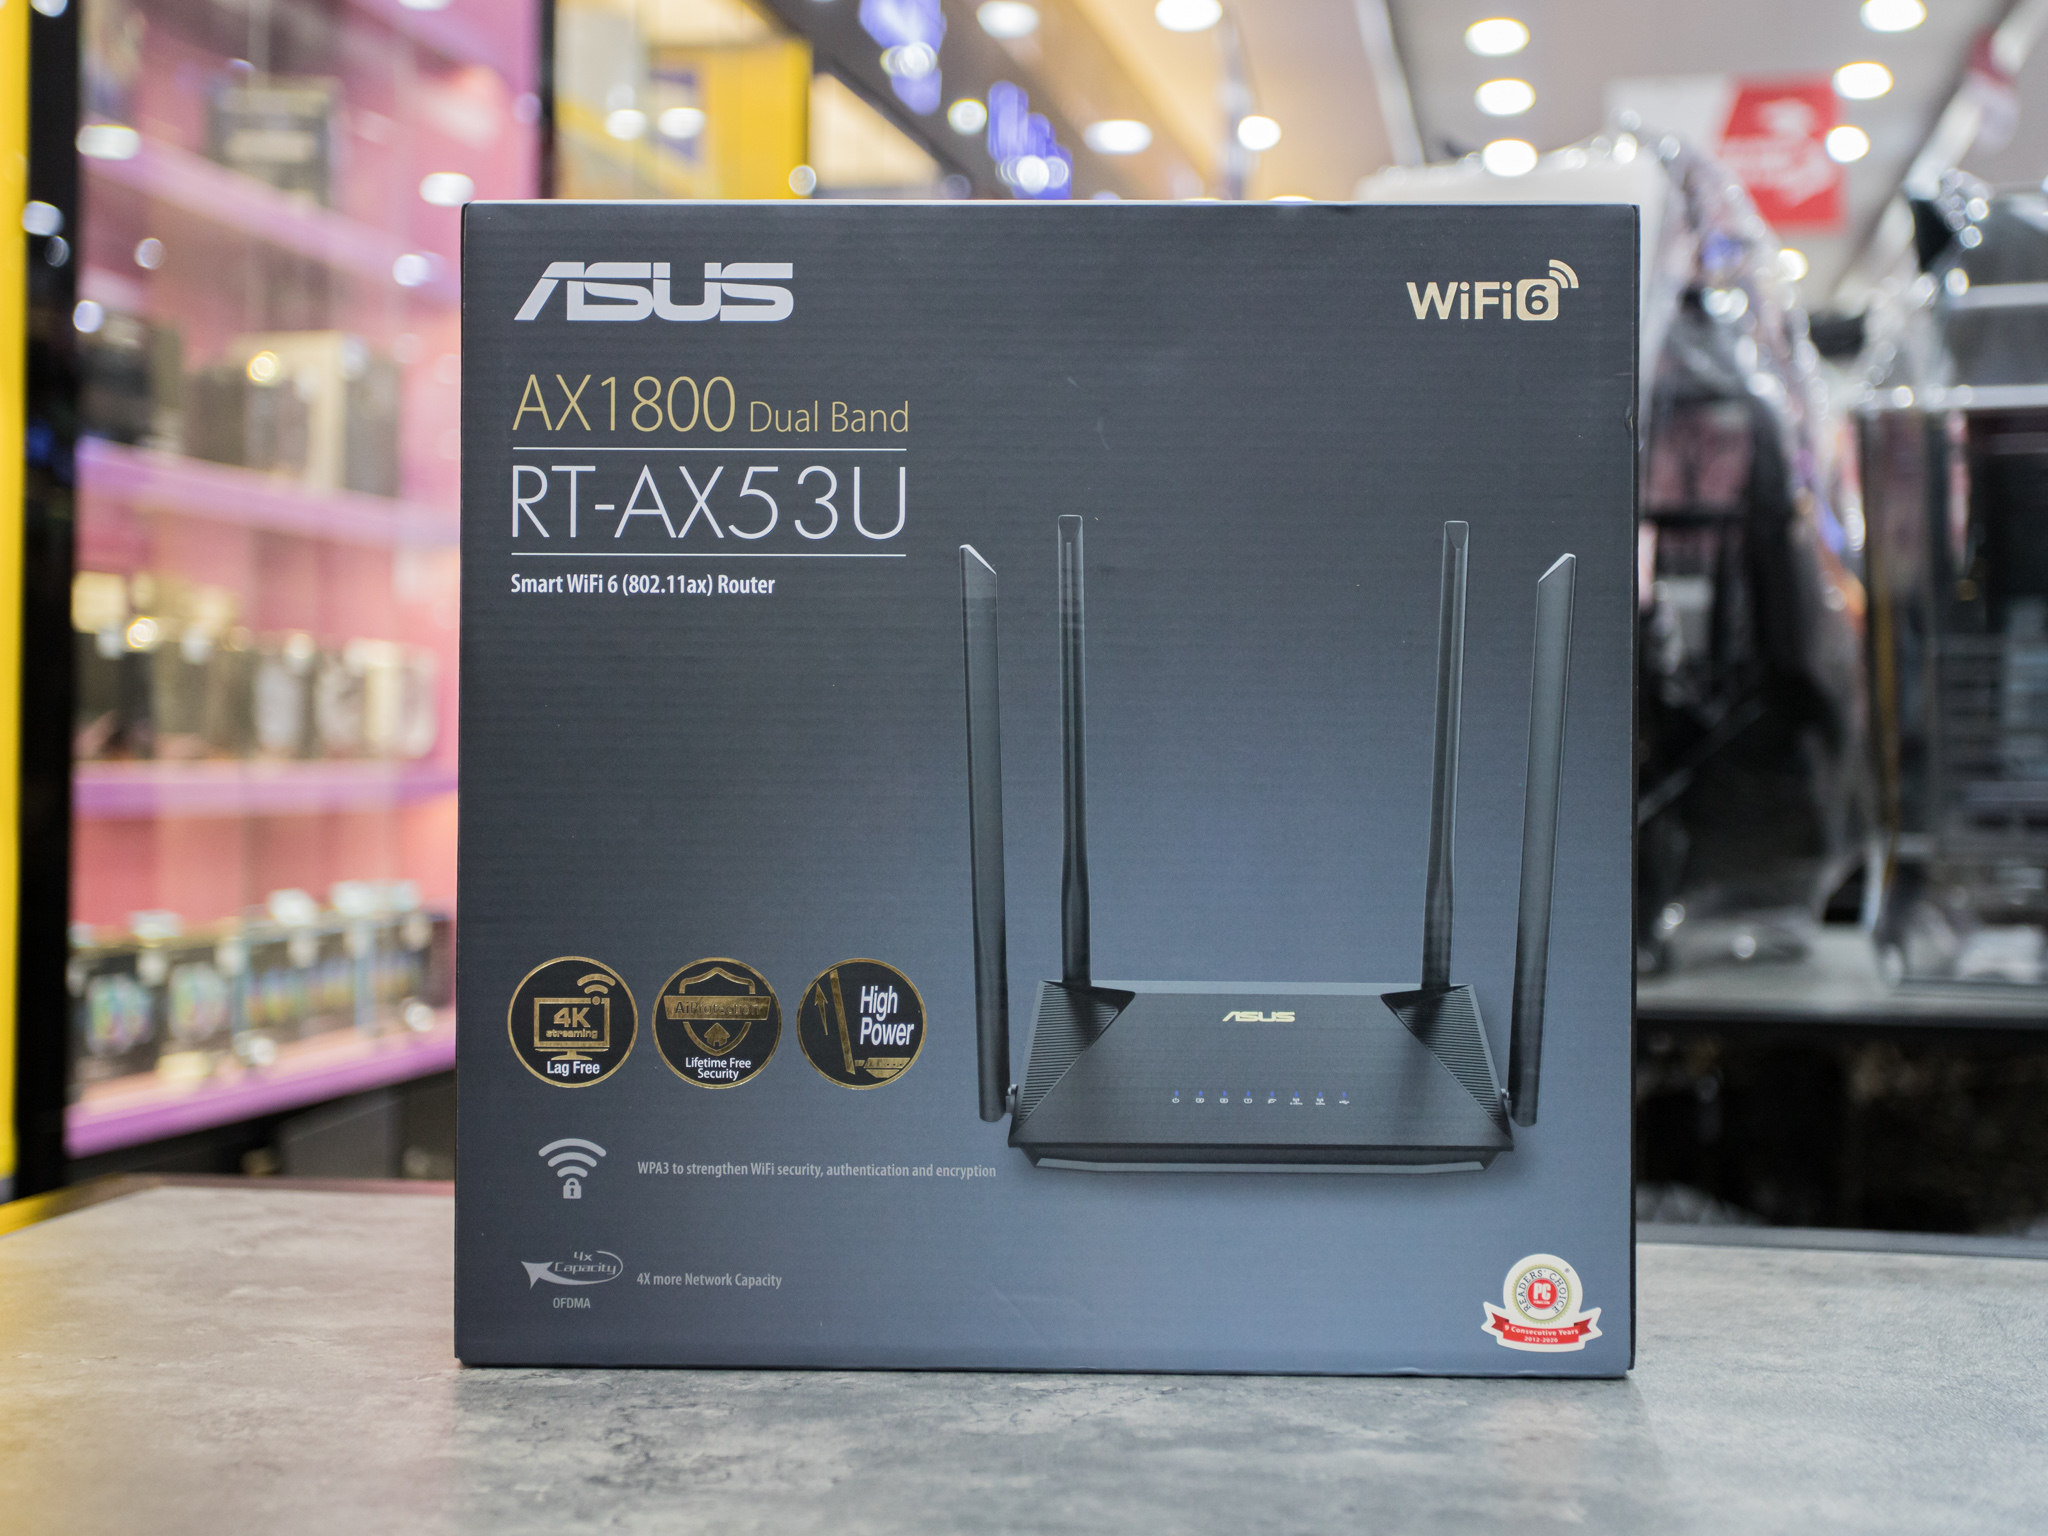 Bộ phát wifi ASUS RT-AX53U, Chuẩn AX1800